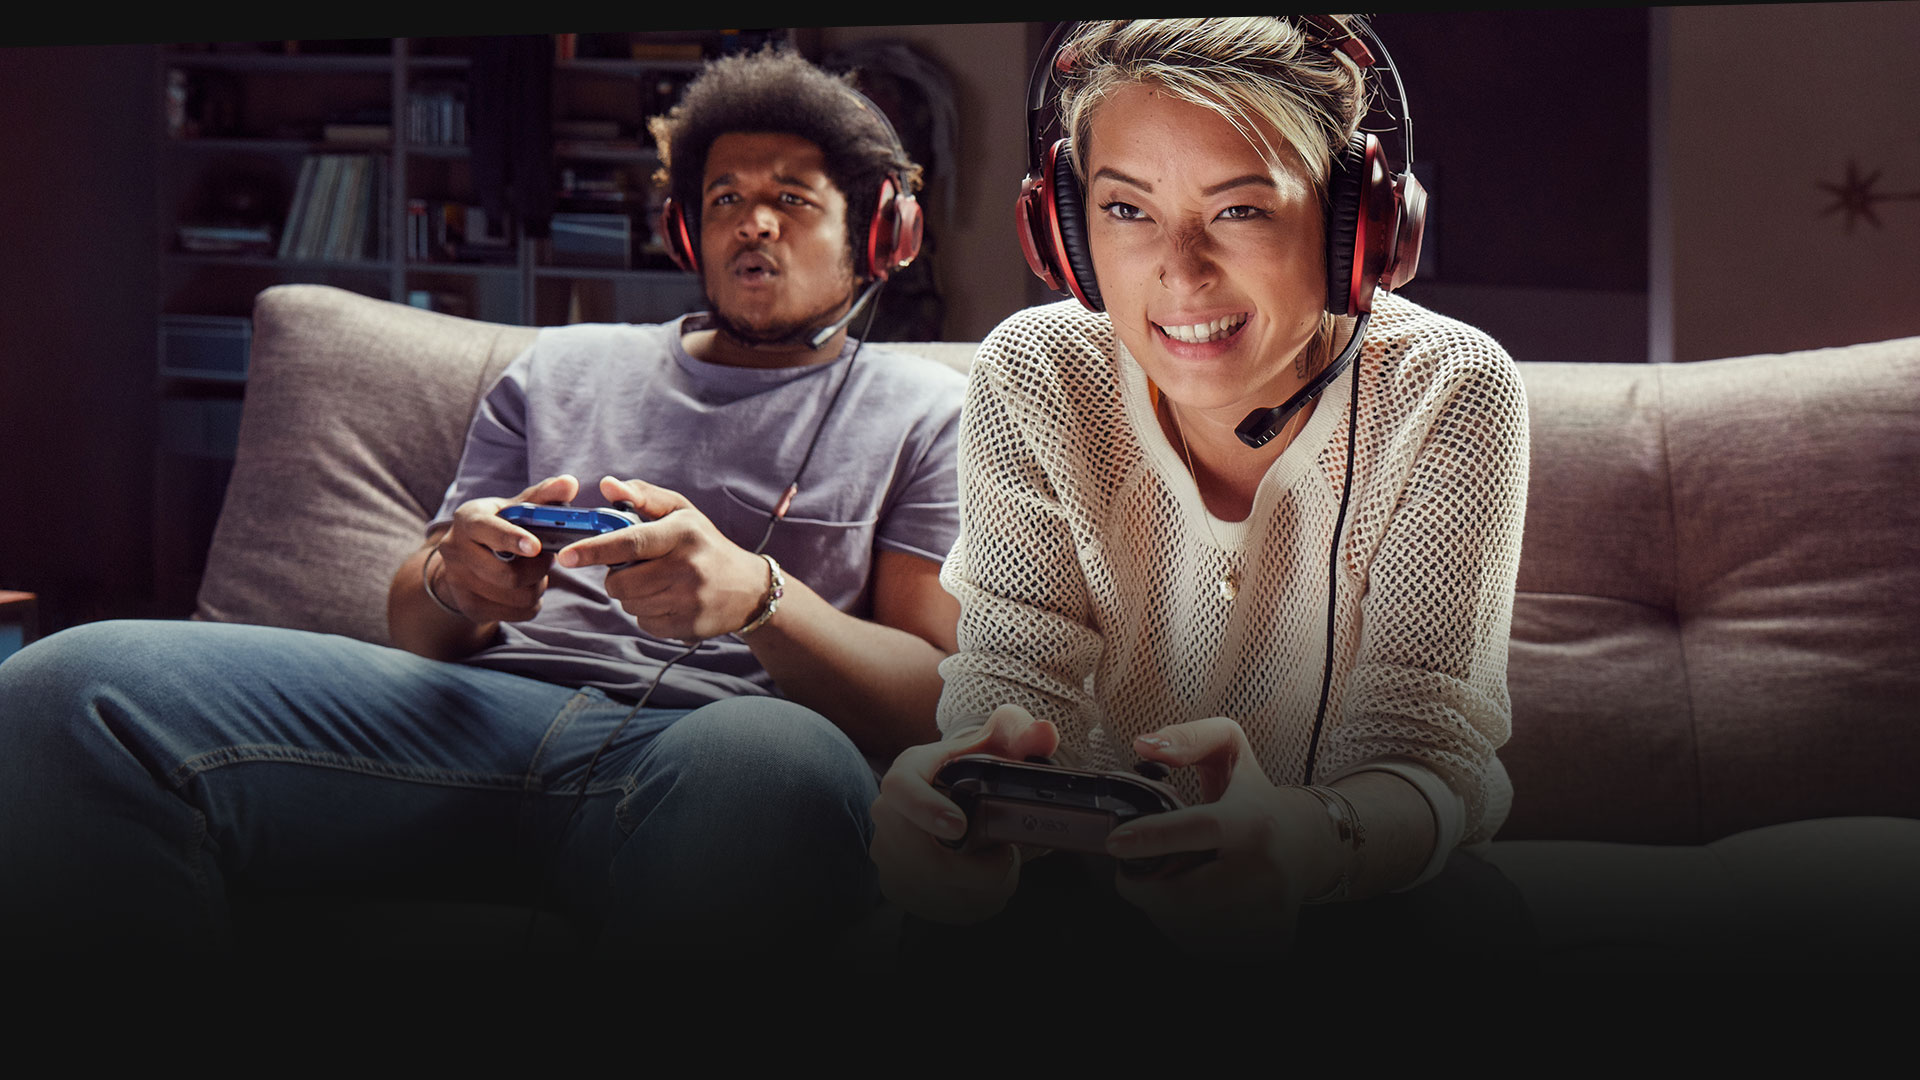 ソファでヘッドセットを装着して Xbox One をプレイしている 2 人のユーザー